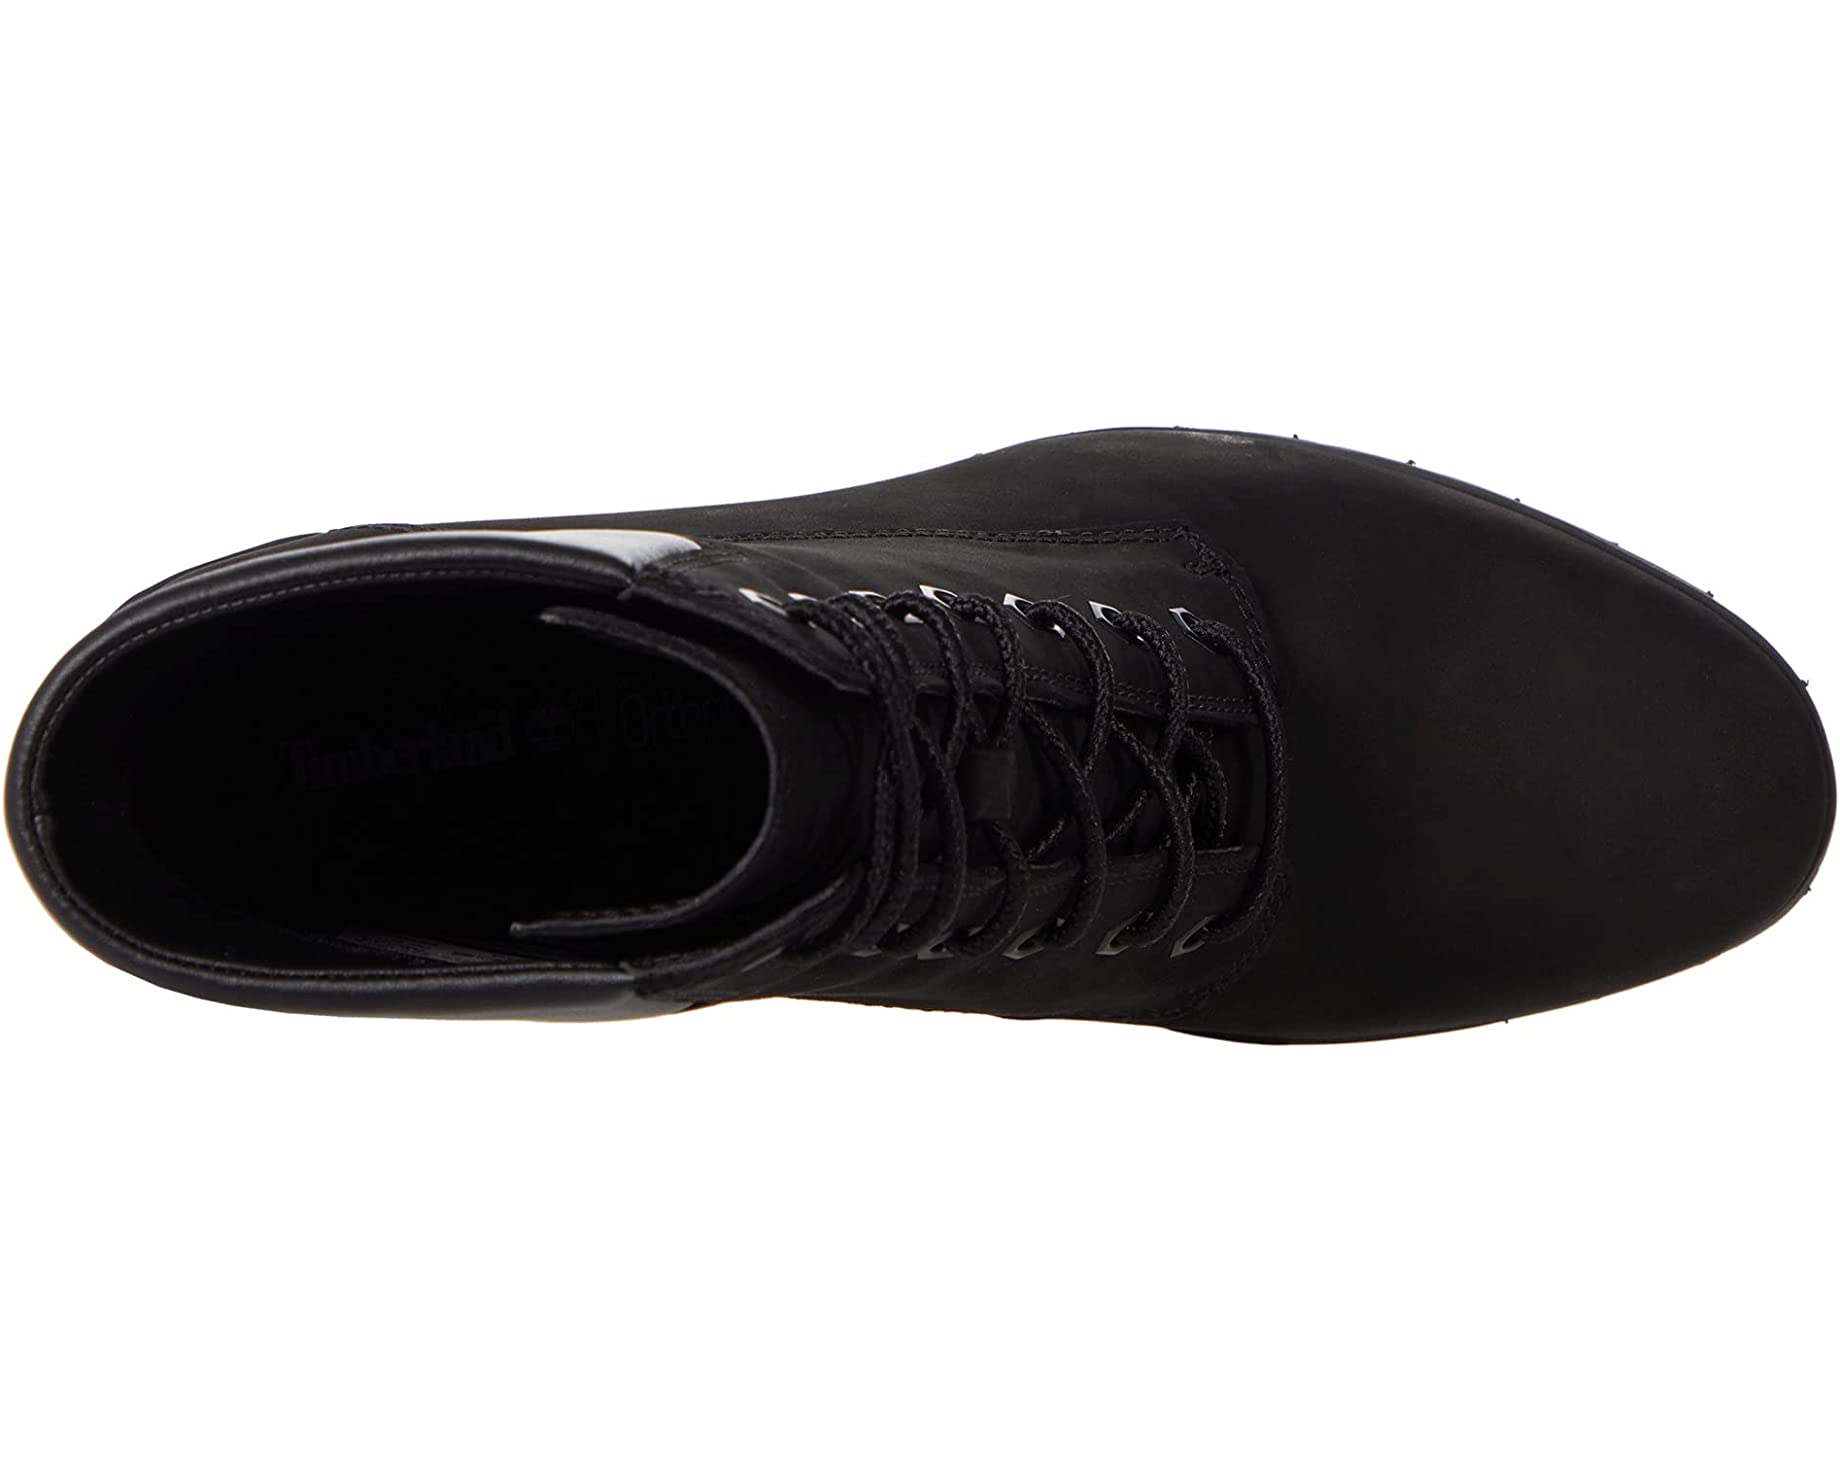 ботинок atmos x 6 дюймов timberland черный Ботинки Allington 6 Lace-Up Timberland, черный